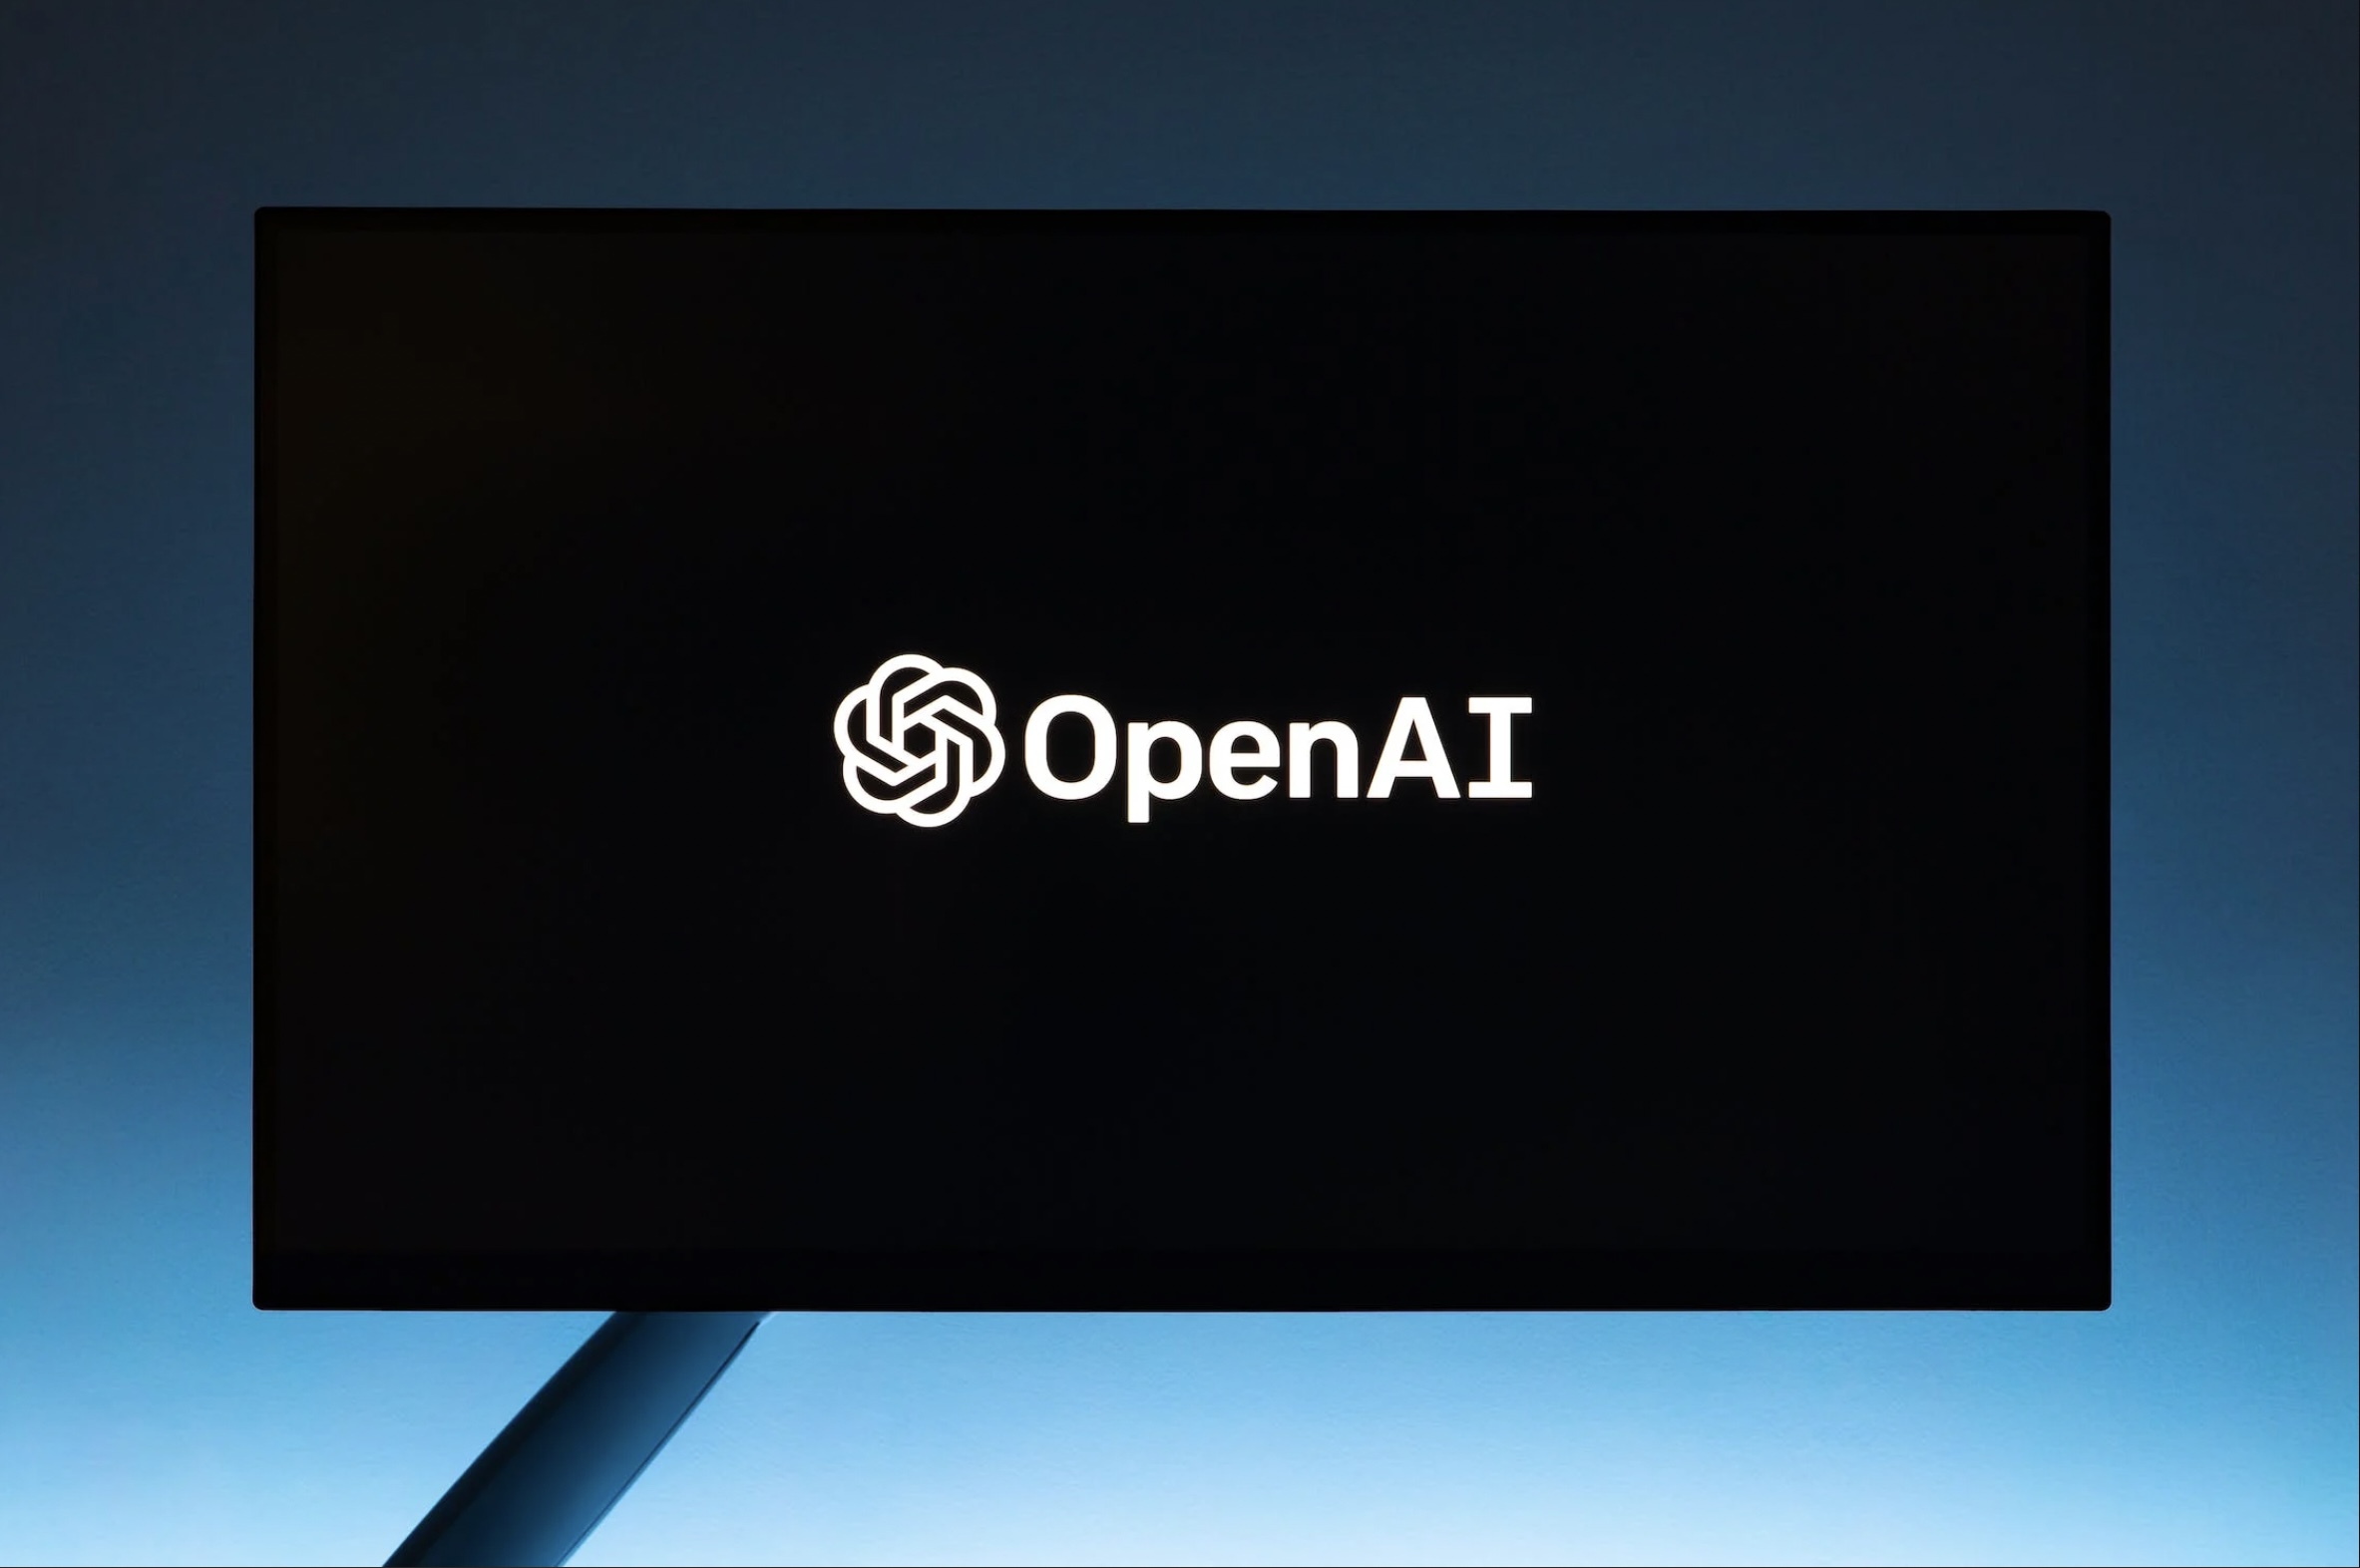 Pantalla con logo de OpenAI